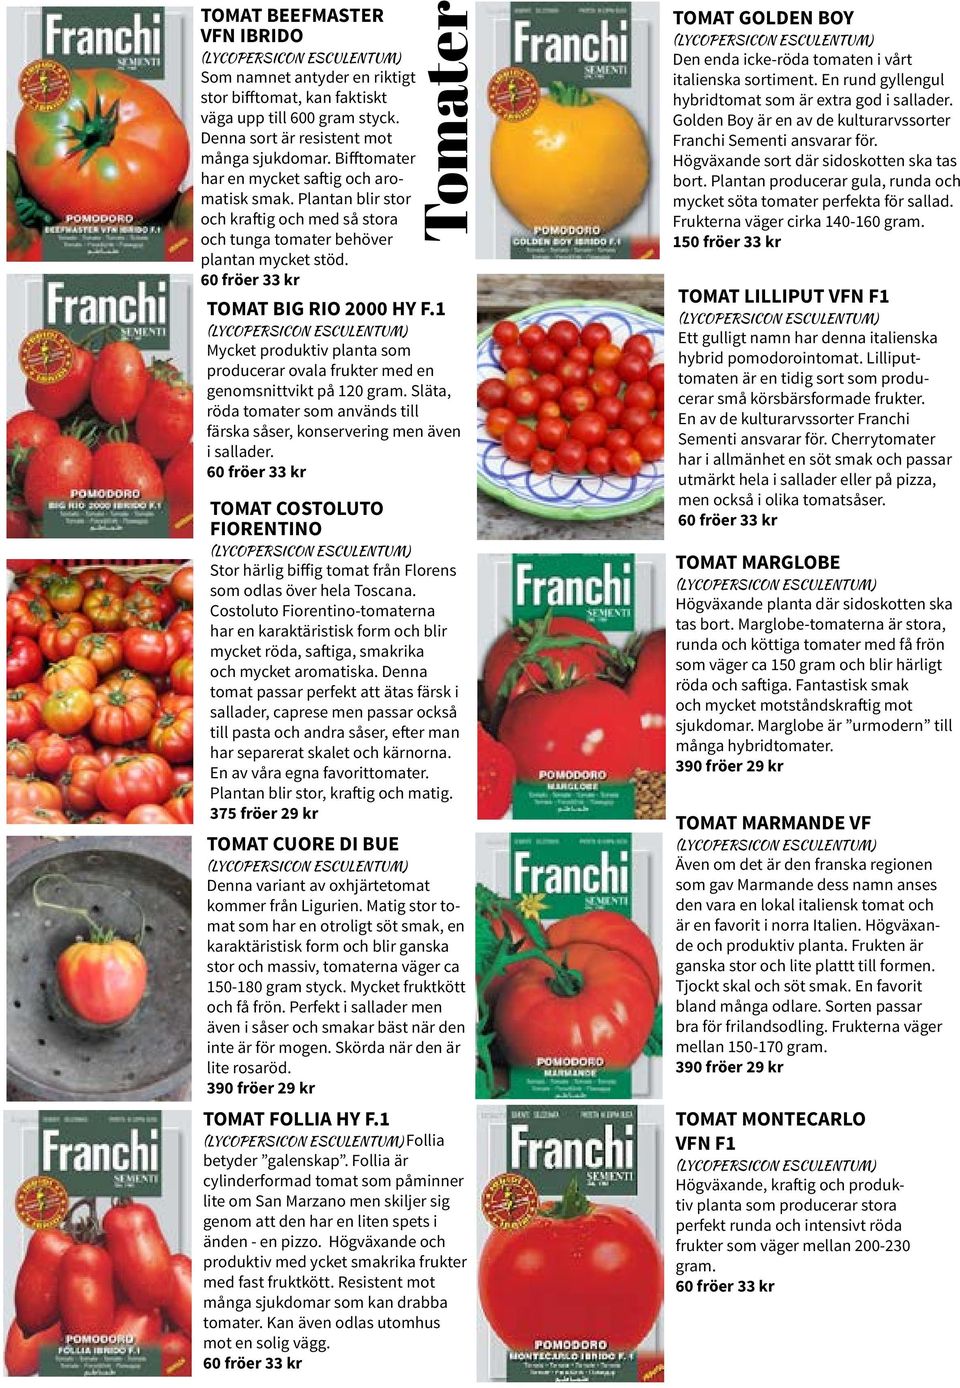 1 (LYCOPERSICON ESCULENTUM) Mycket produktiv planta som producerar ovala frukter med en genomsnittvikt på 120 gram. Släta, röda tomater som används till färska såser, konservering men även i sallader.